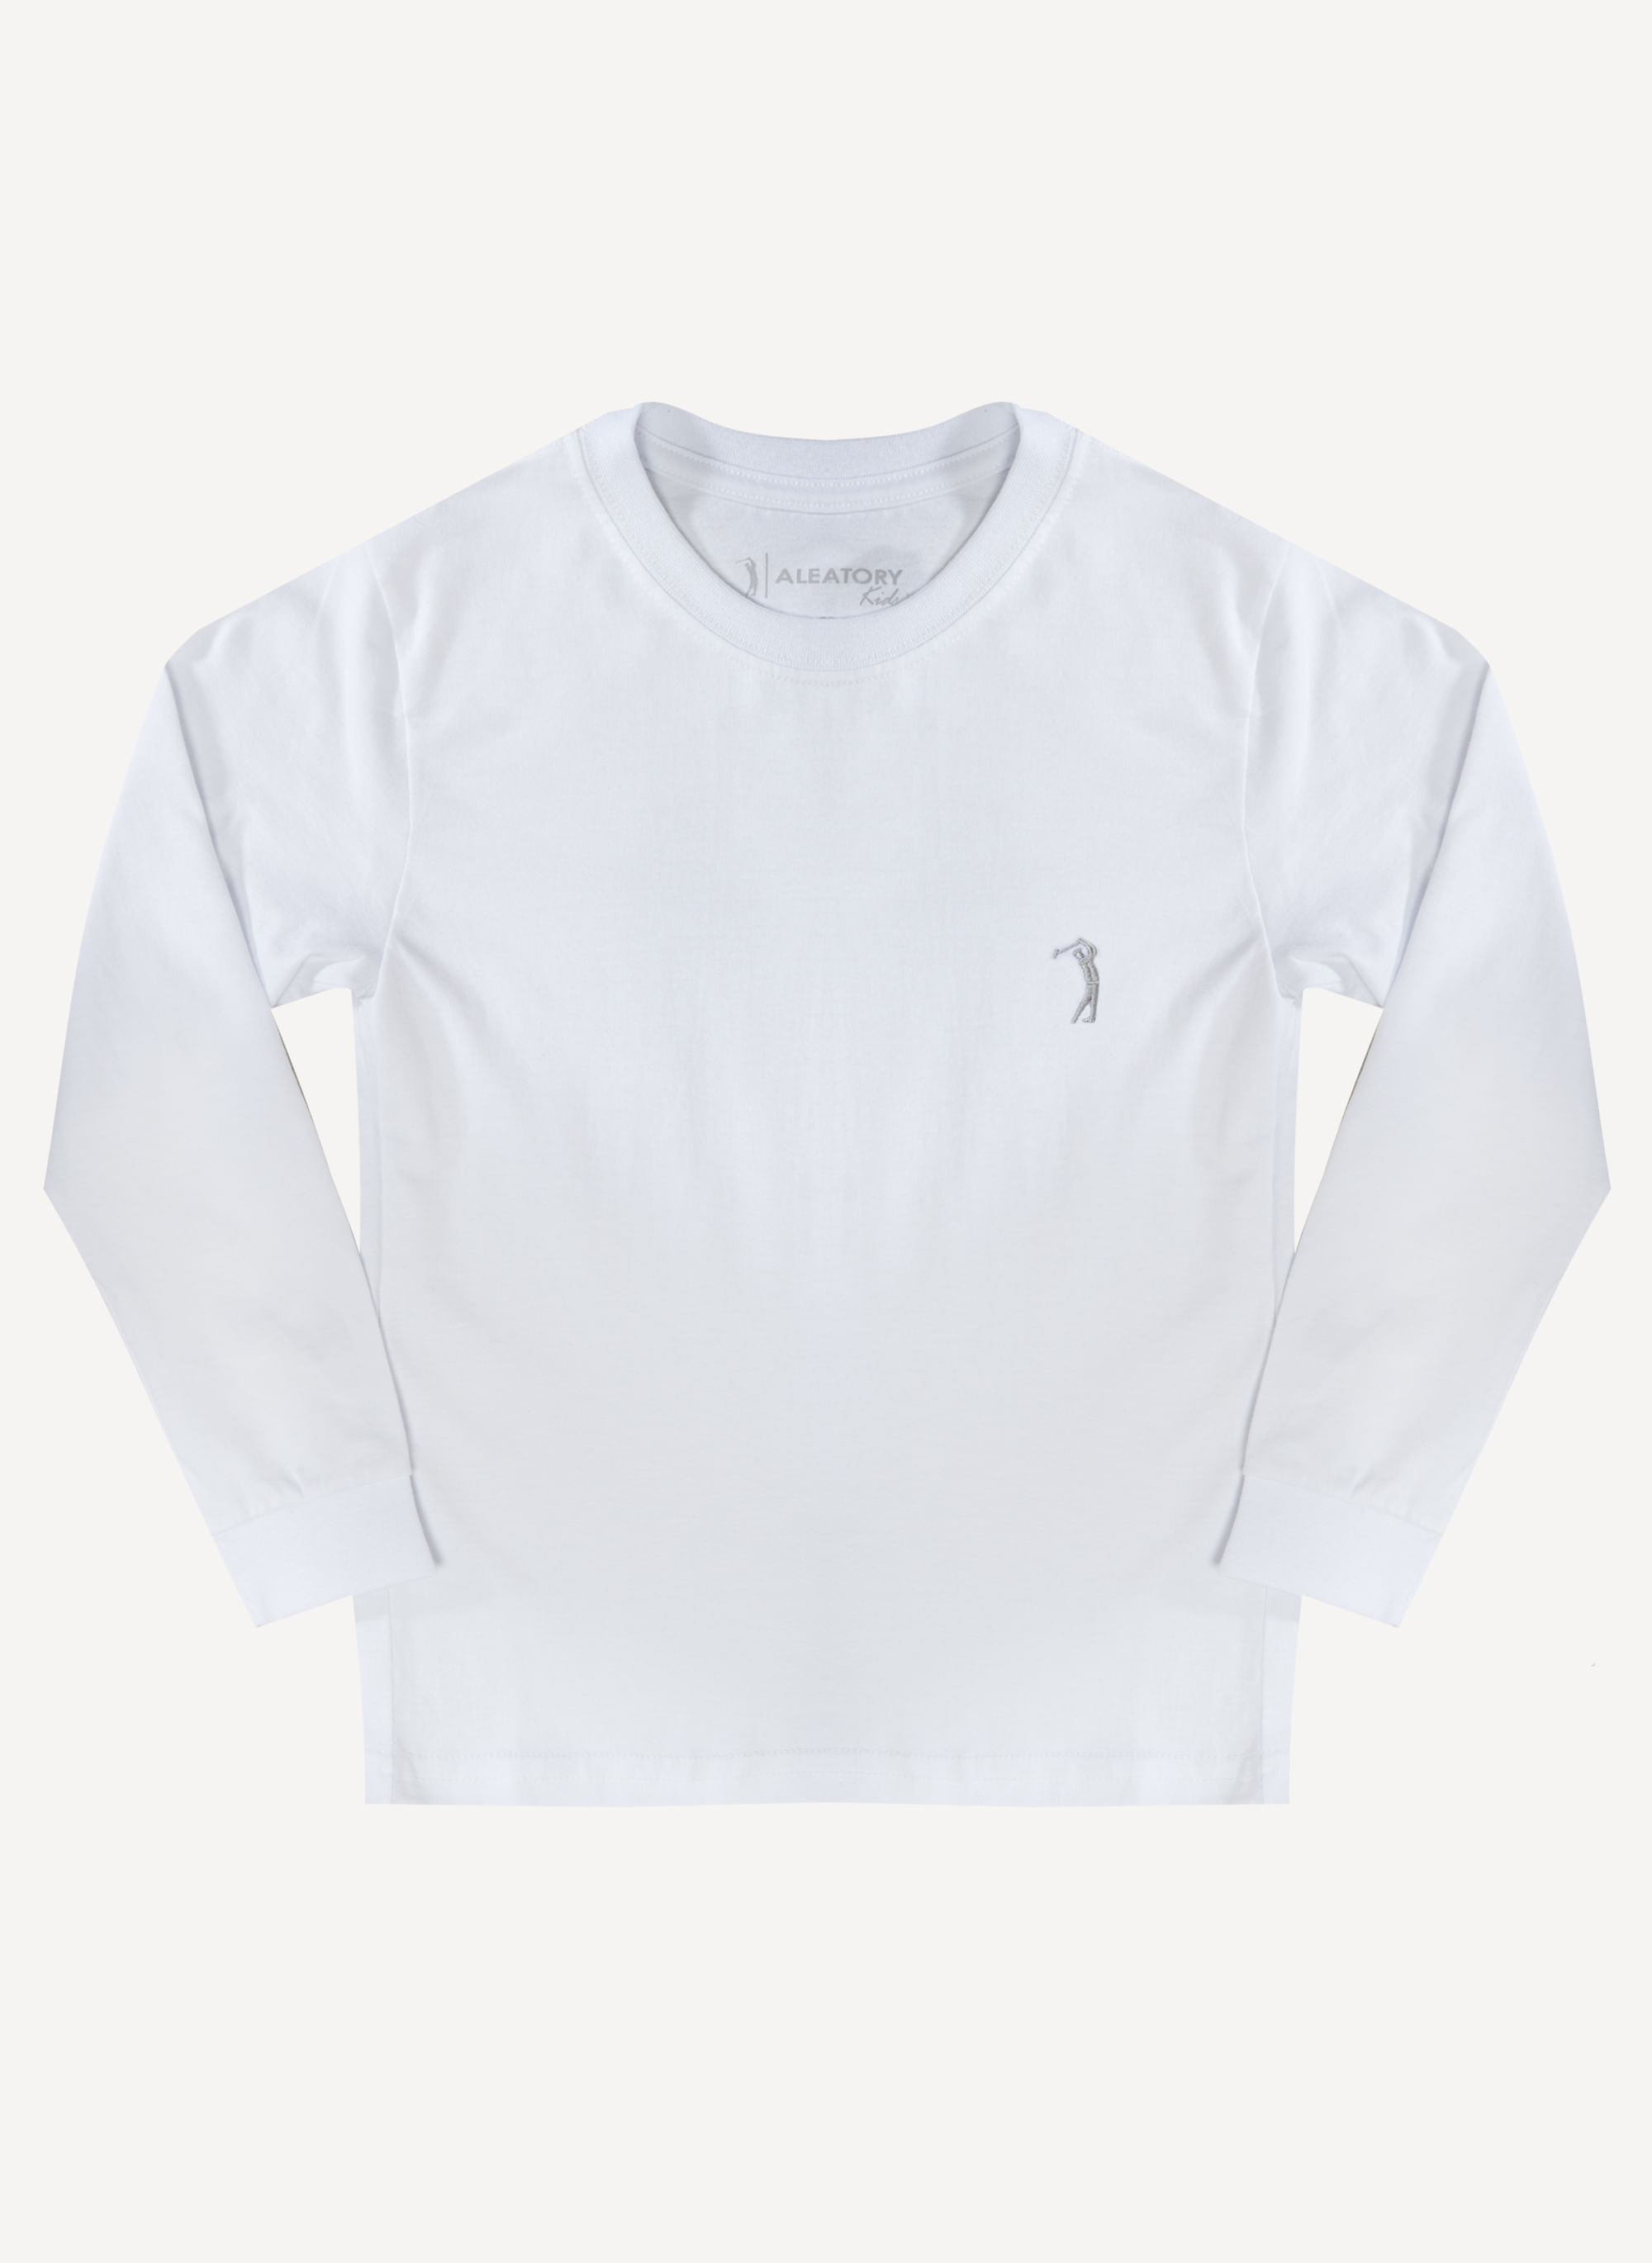 Camiseta-Aleatory-Infantil-Lisa-Manga-Longa-Freedom-Branca-Branco-4